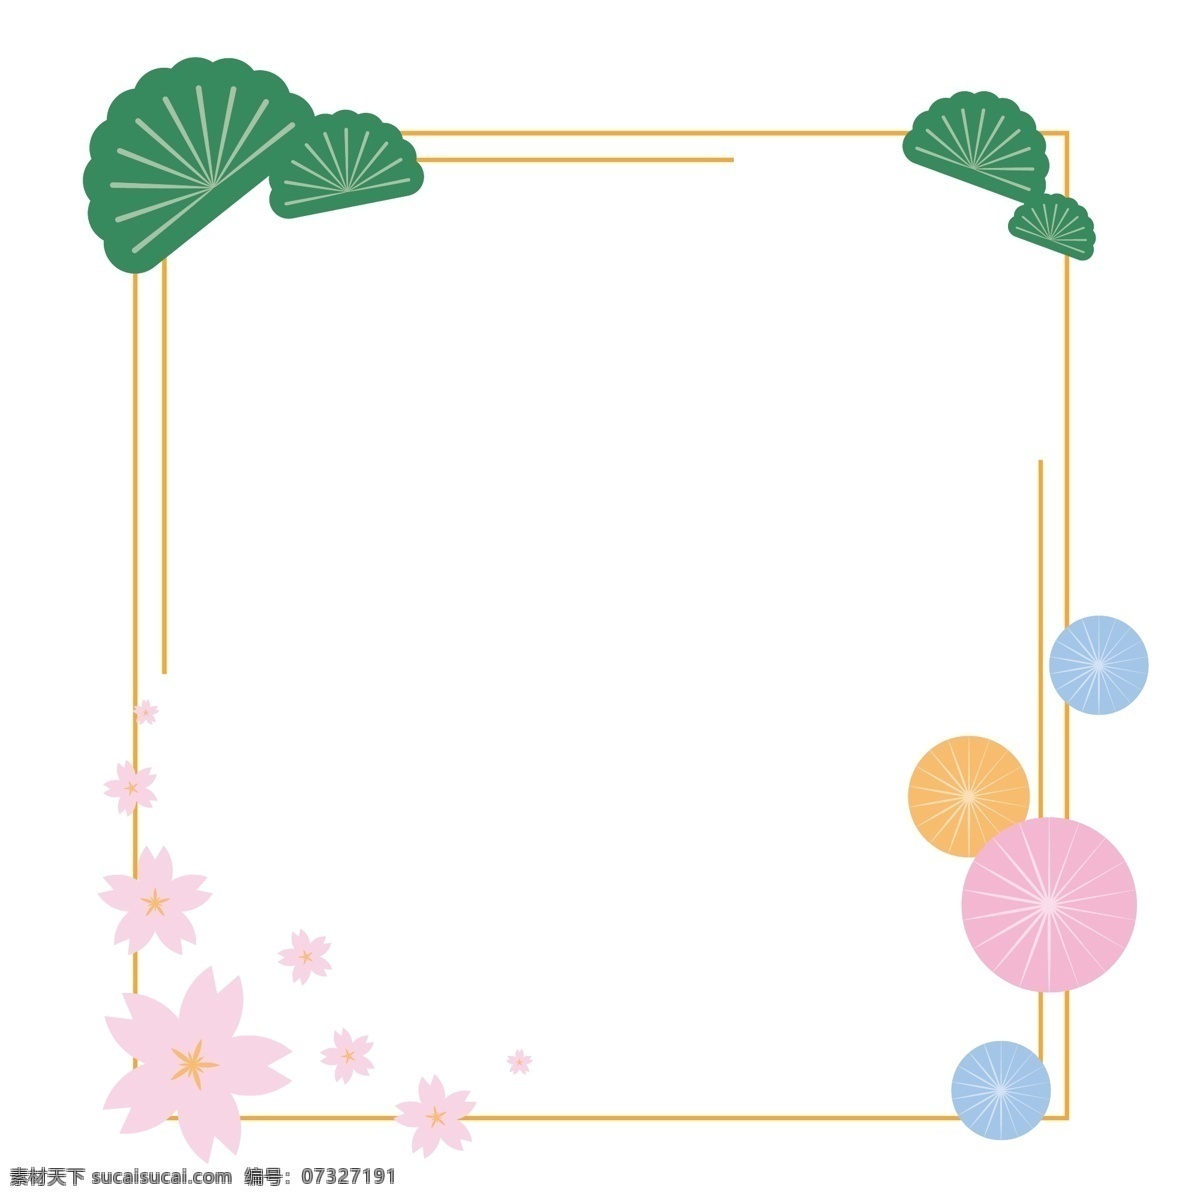 日式 樱花 可爱 少女 风格 唯美 矢量 免 抠 边框 和风 可爱少女风格 萌 日本 伞 日式装饰 绿植 花朵 花 金色细边 糖果色 柔色 马卡龙色